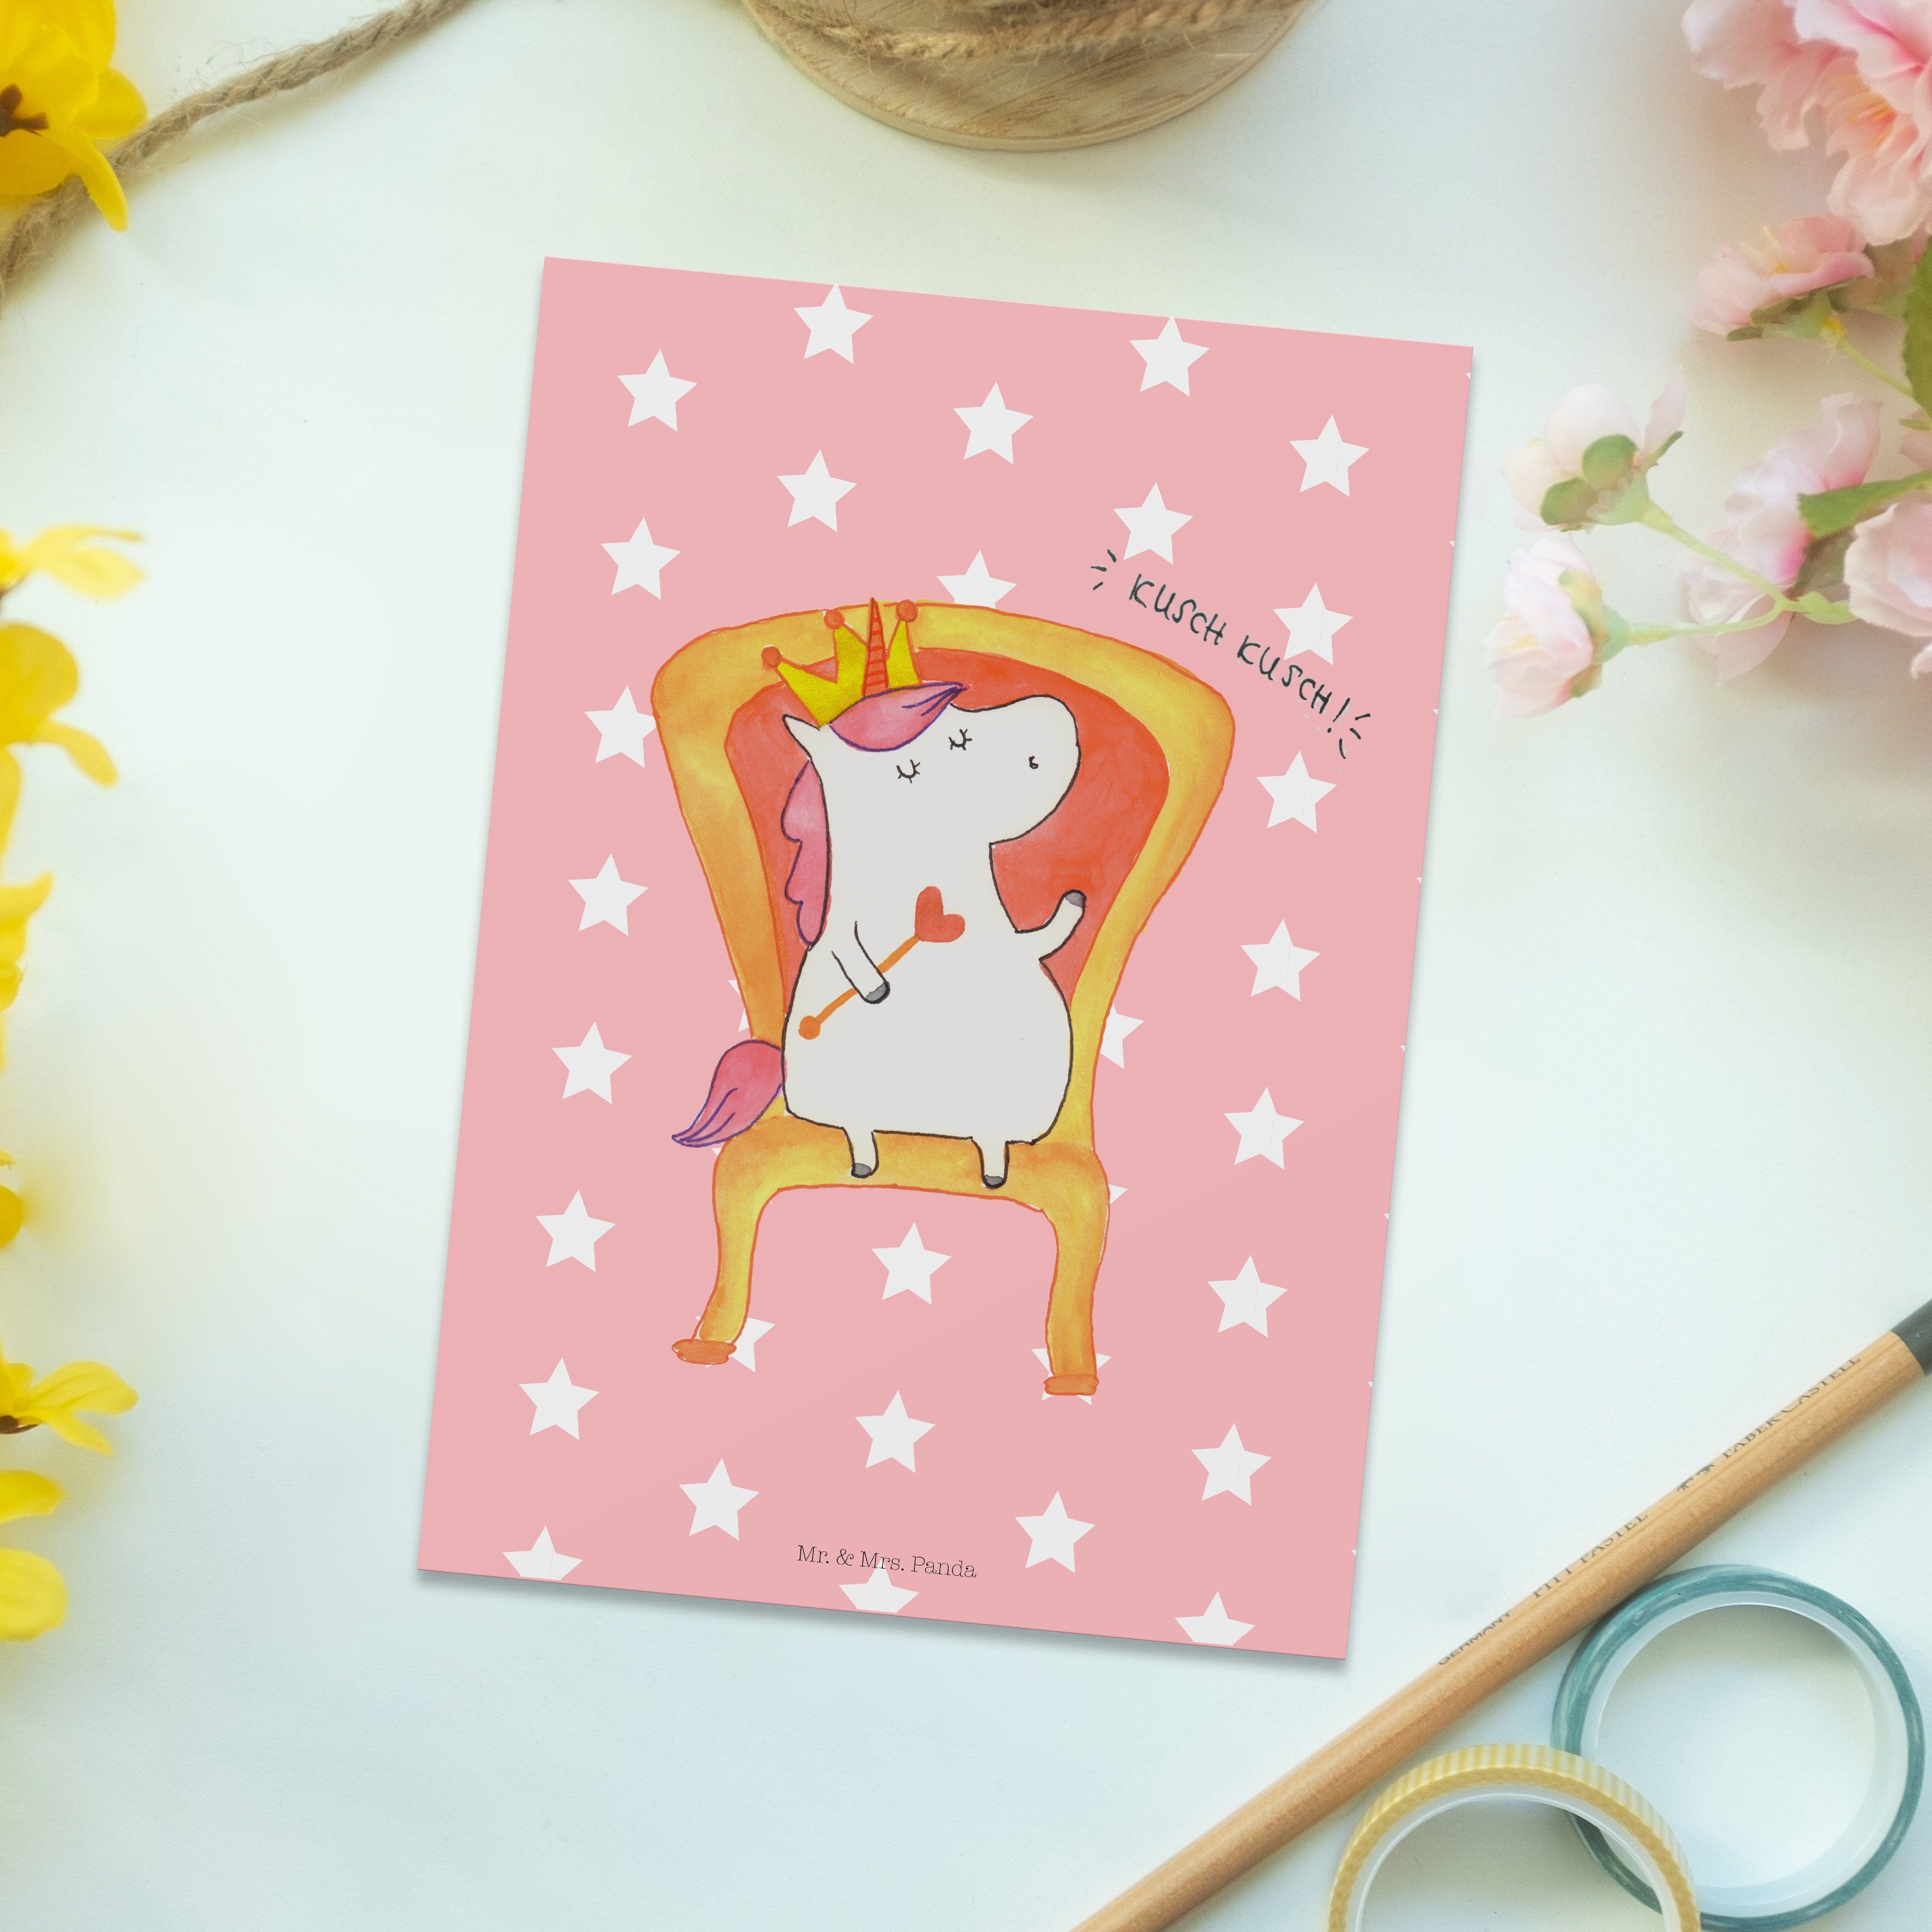 Mr. & Geburtstagsgeschenk, Gru Einhorn - Panda - Geschenk, Prinzessin Pastell Rot Mrs. Postkarte